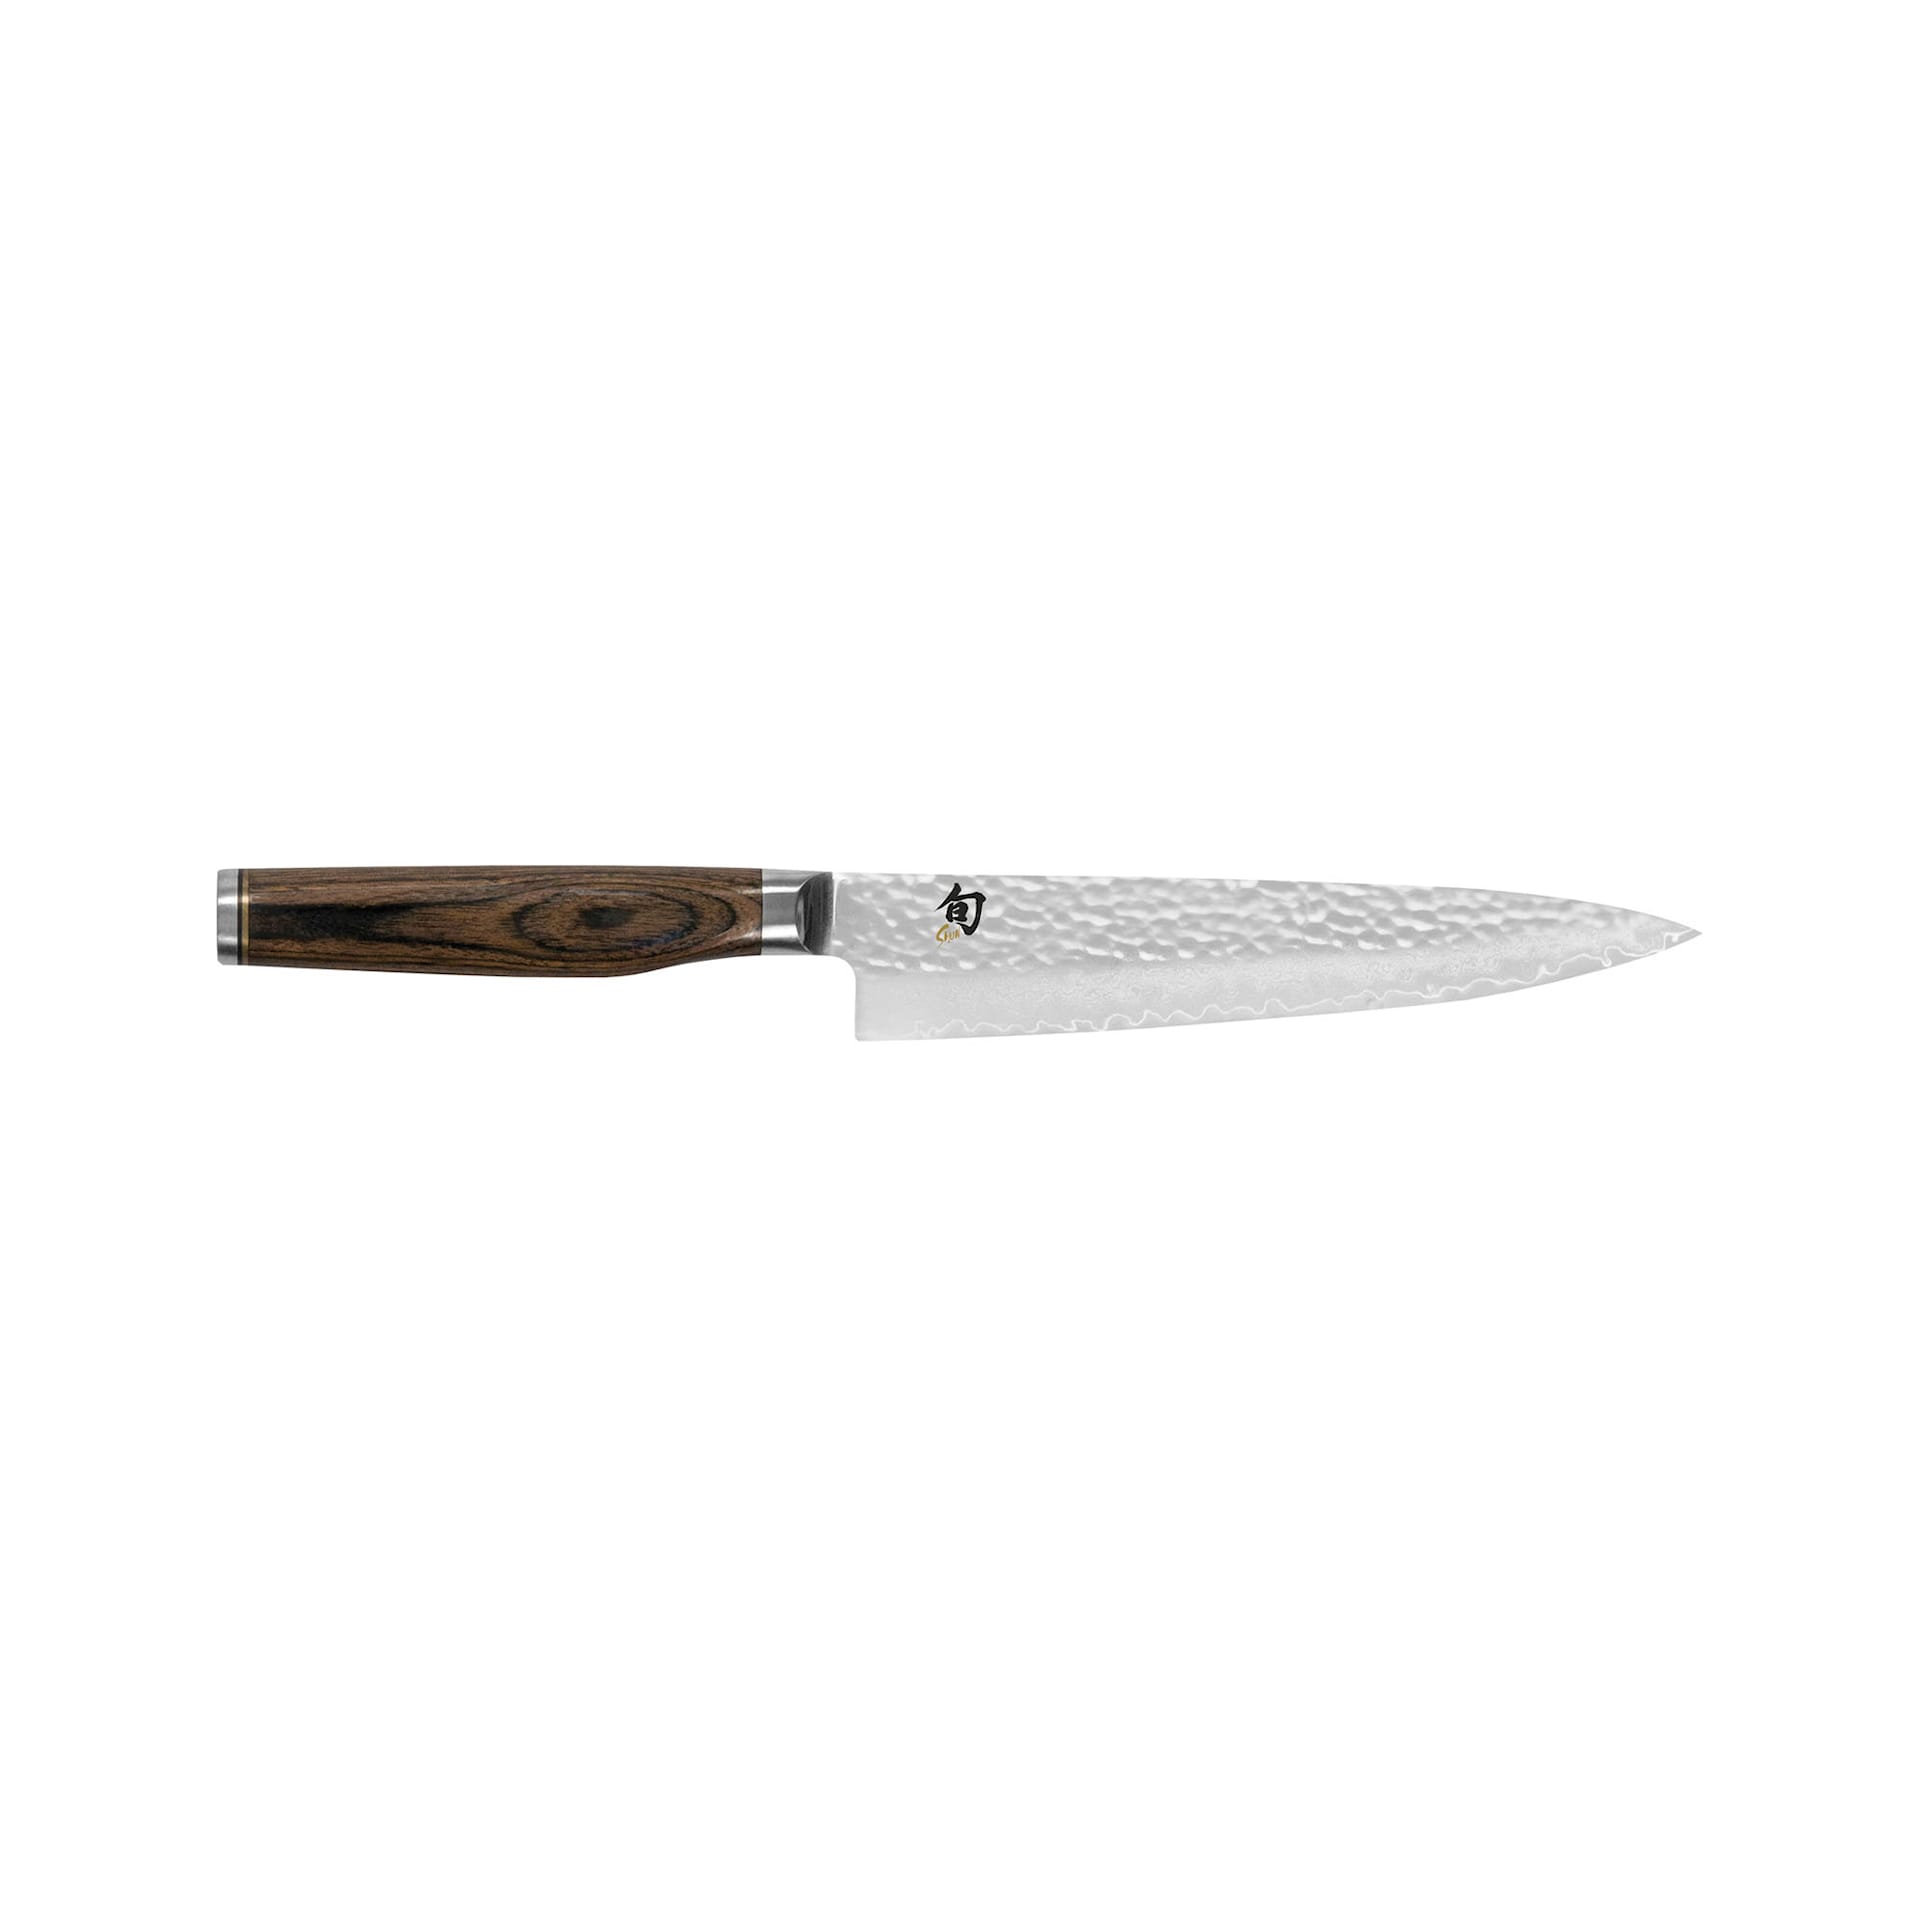 SHUN PREMIER Utility Knife 16,5 cm - KAI - NO GA